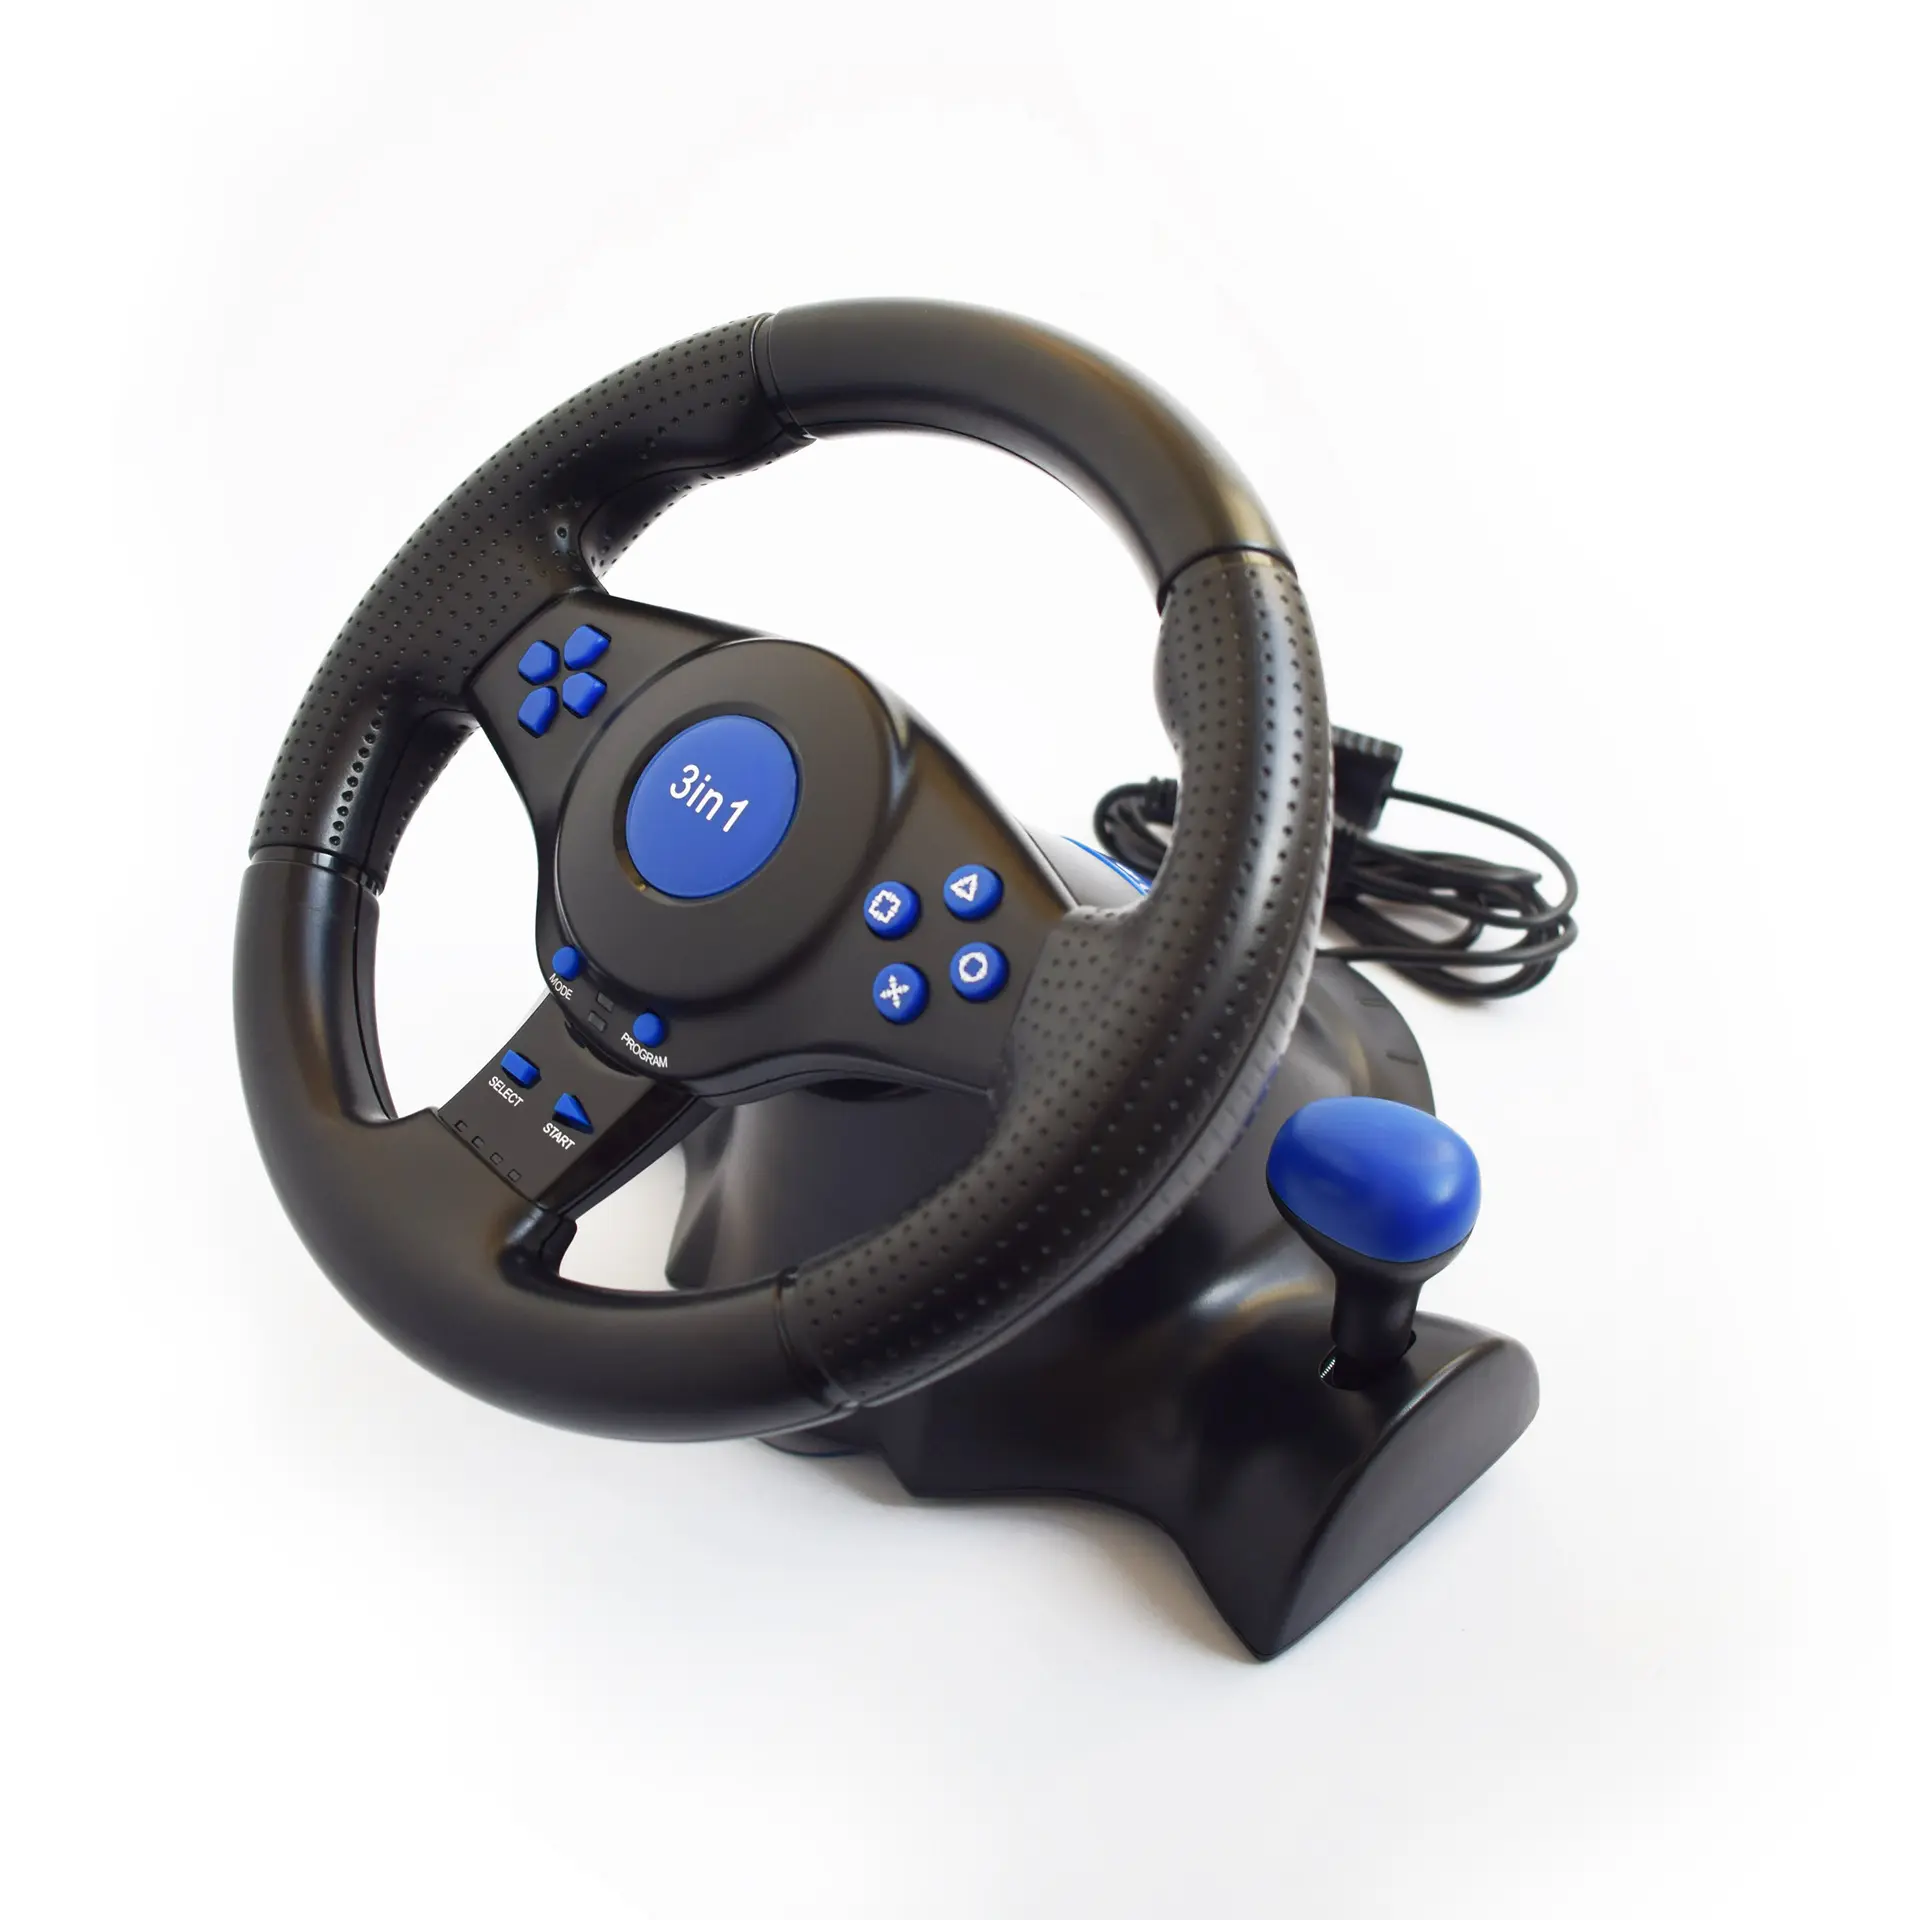 RALAN PS2 porta dupla usb para ps3 jogos de computador volante carro de corrida com sistema pedal